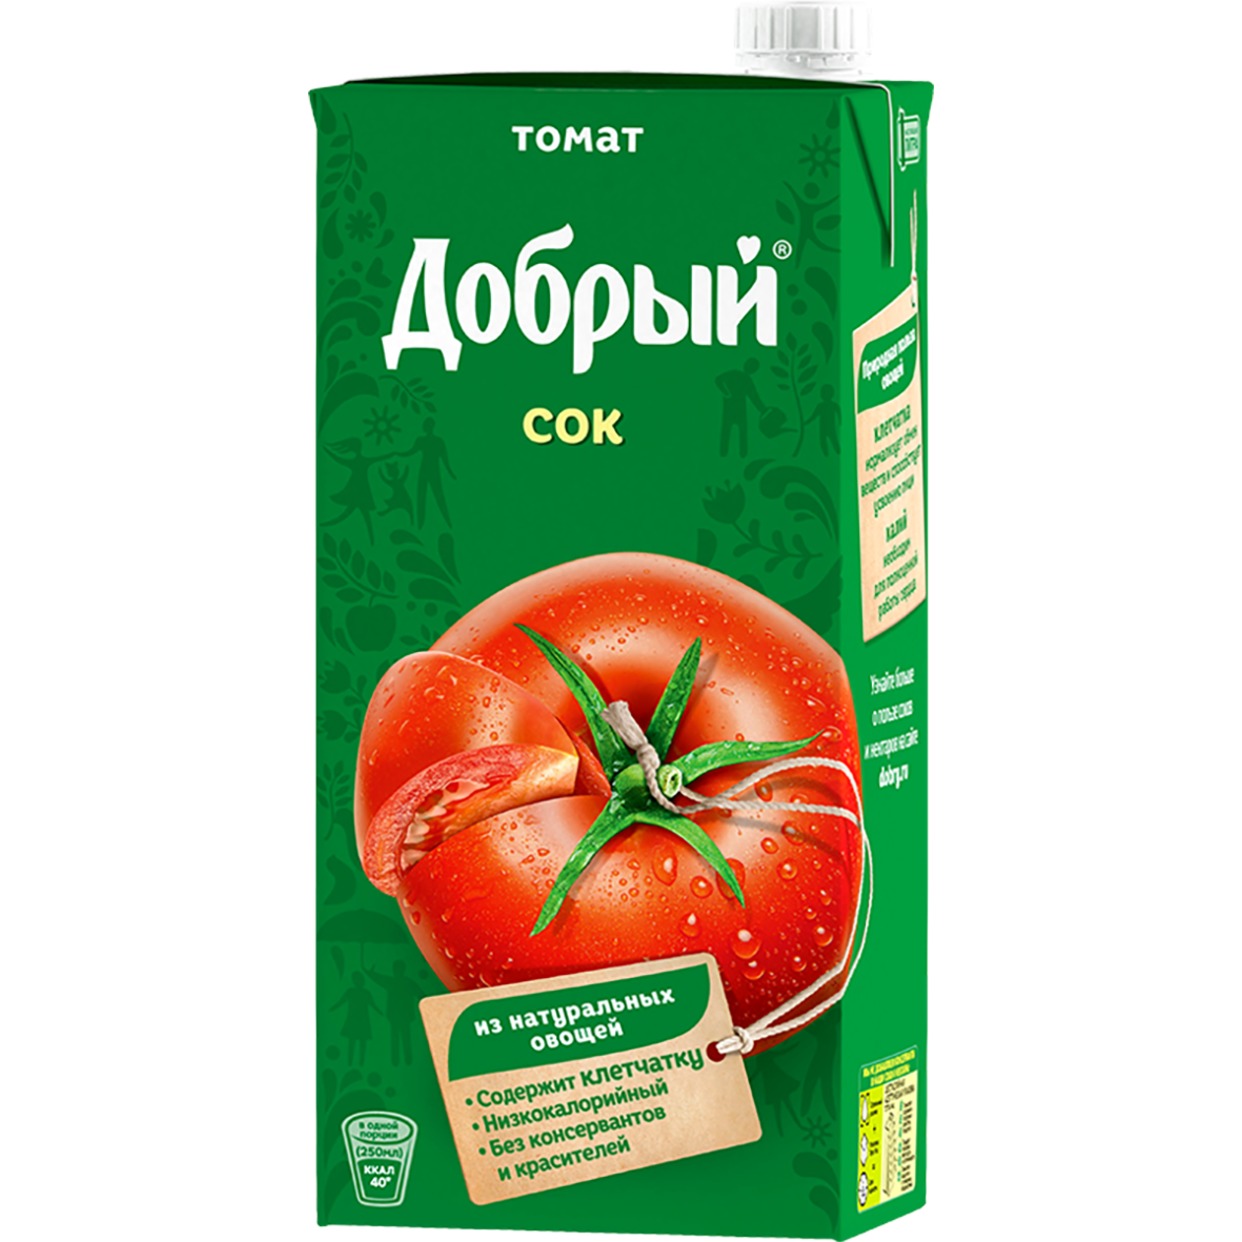 Сок Добрый, томат с солью, 2 л по акции в Пятерочке